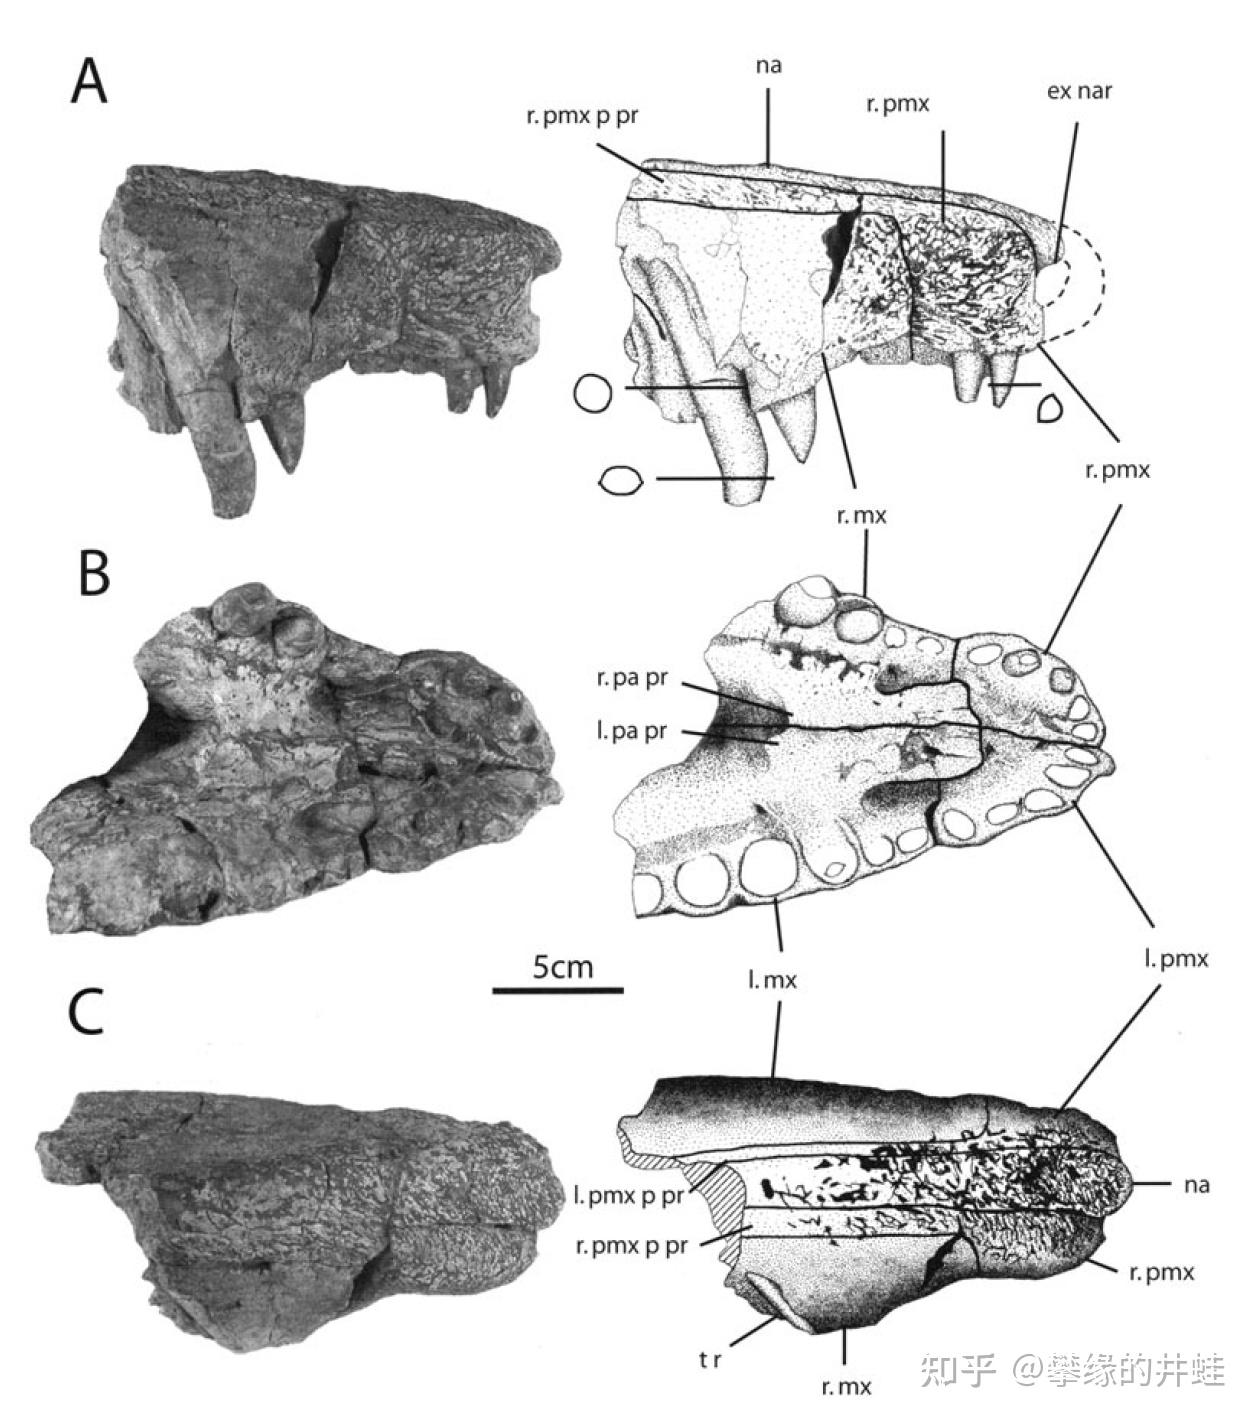 奎伊雷东达猎鳄生存于晚三叠世诺利期到瑞替期,化石产自新墨西哥州.